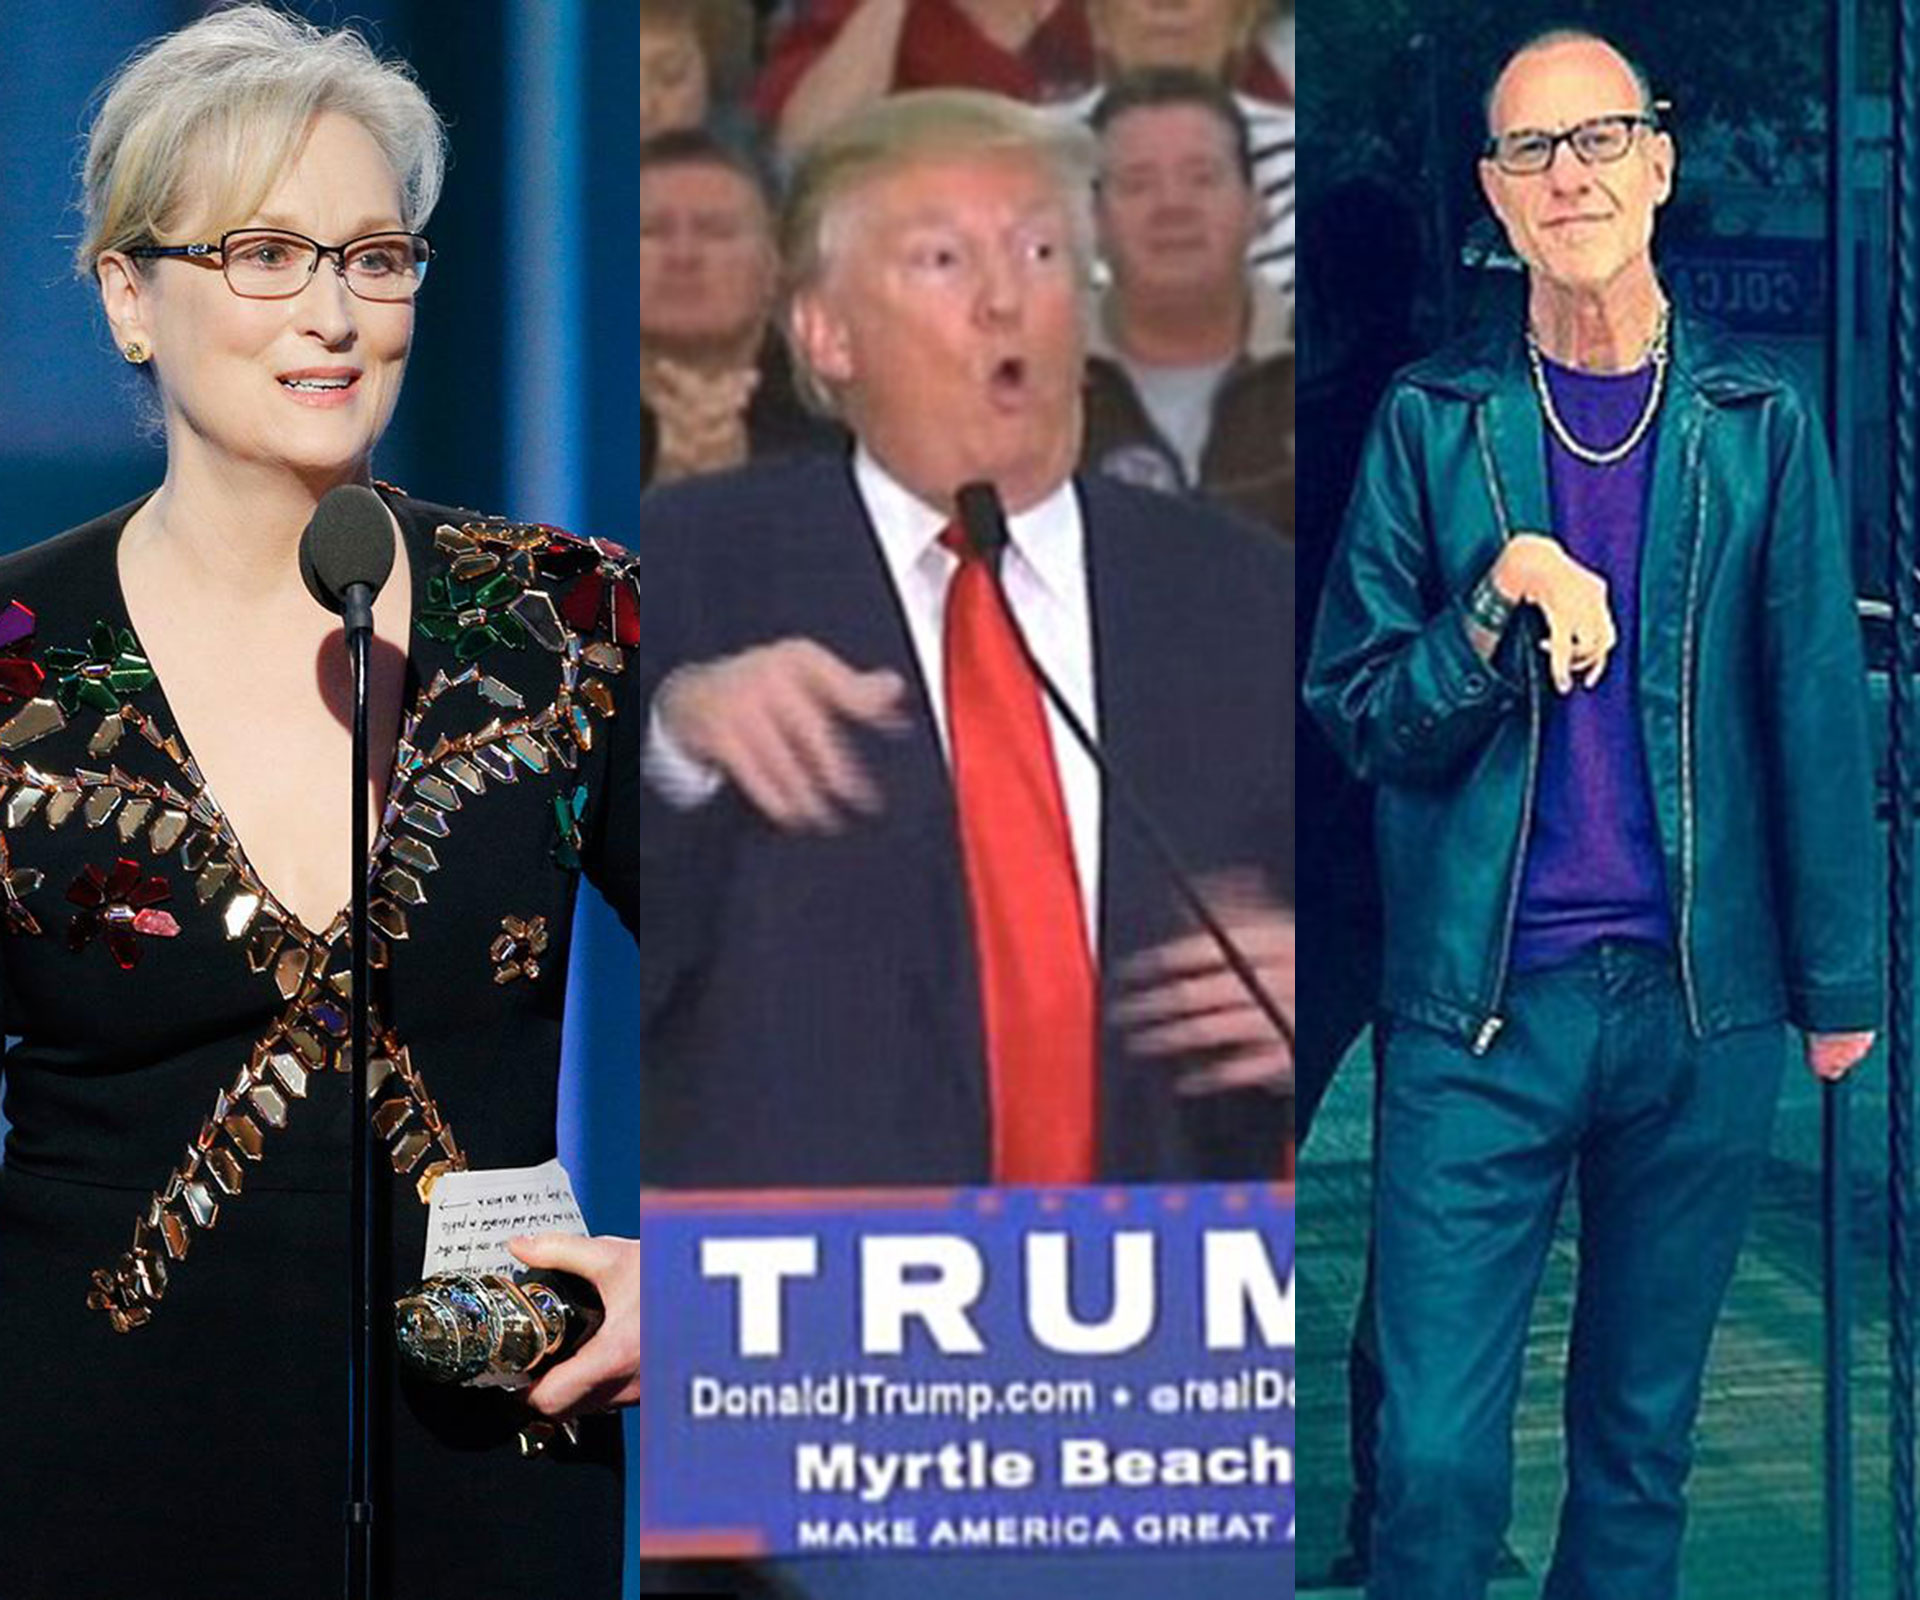 Donald Trump attacks Meryl Streep after her powerful Golden Globes speech